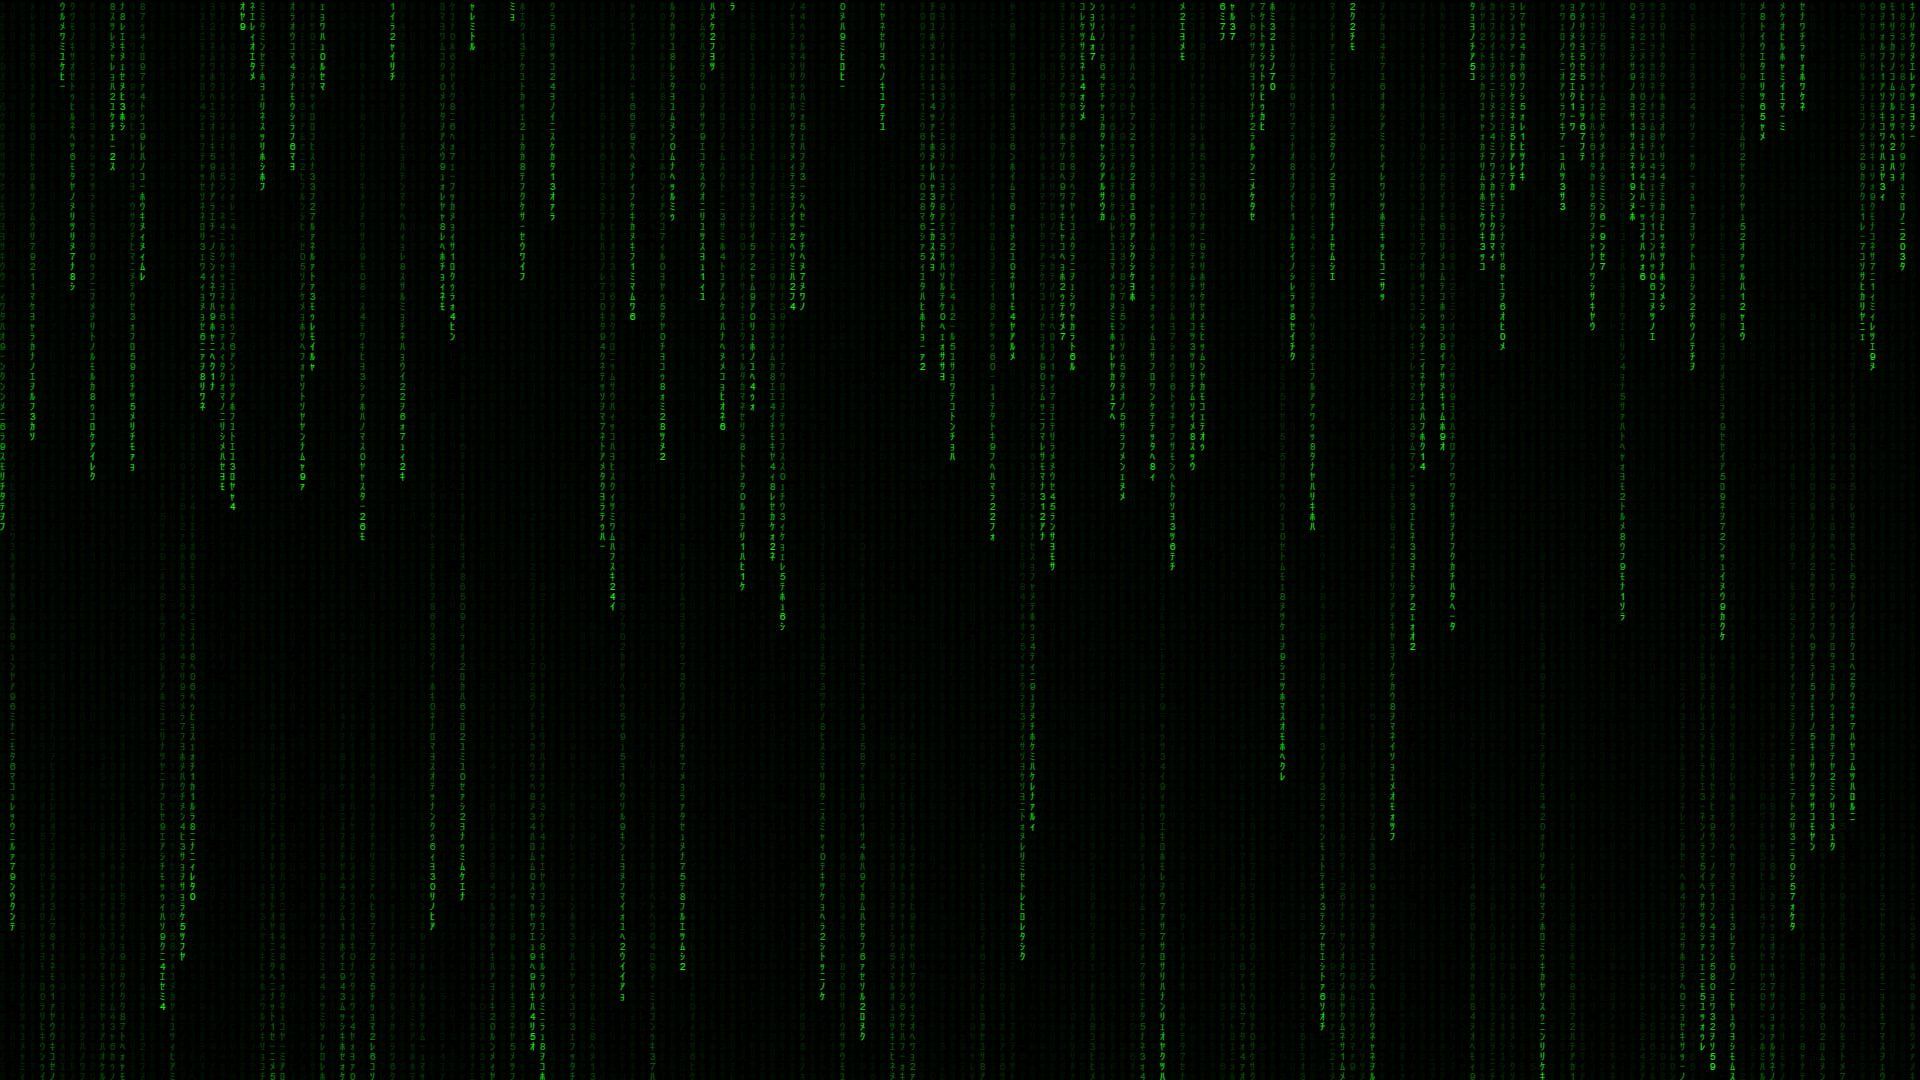 Matrix Code Wallpaper Free .wallpaperaccess.com